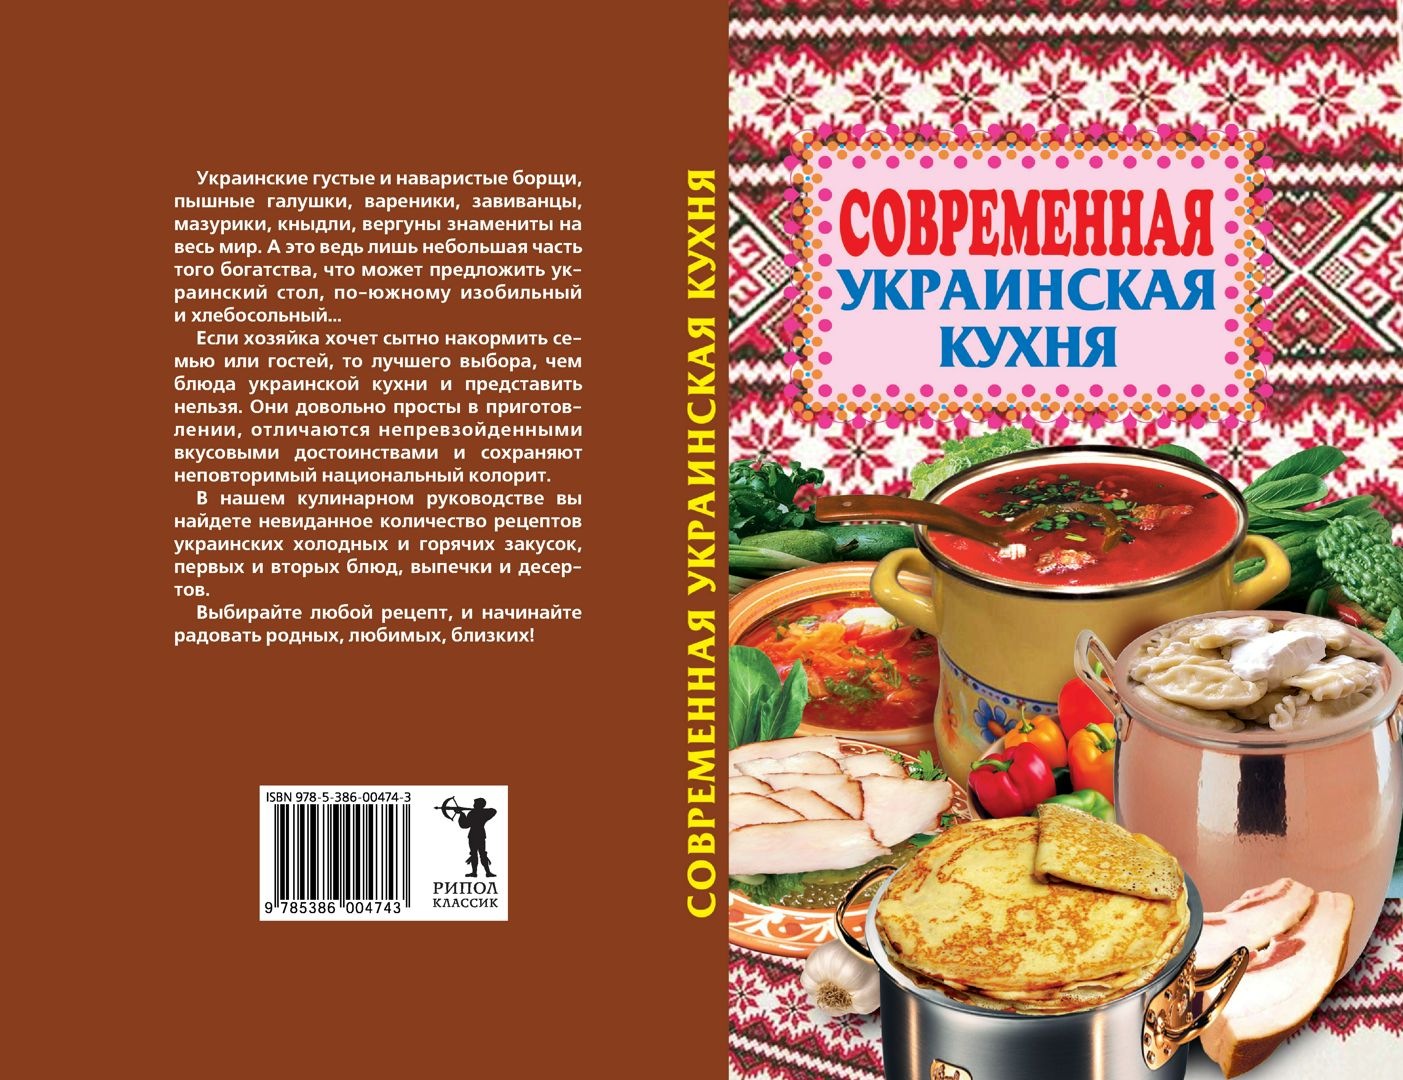 Современная украинская кухня